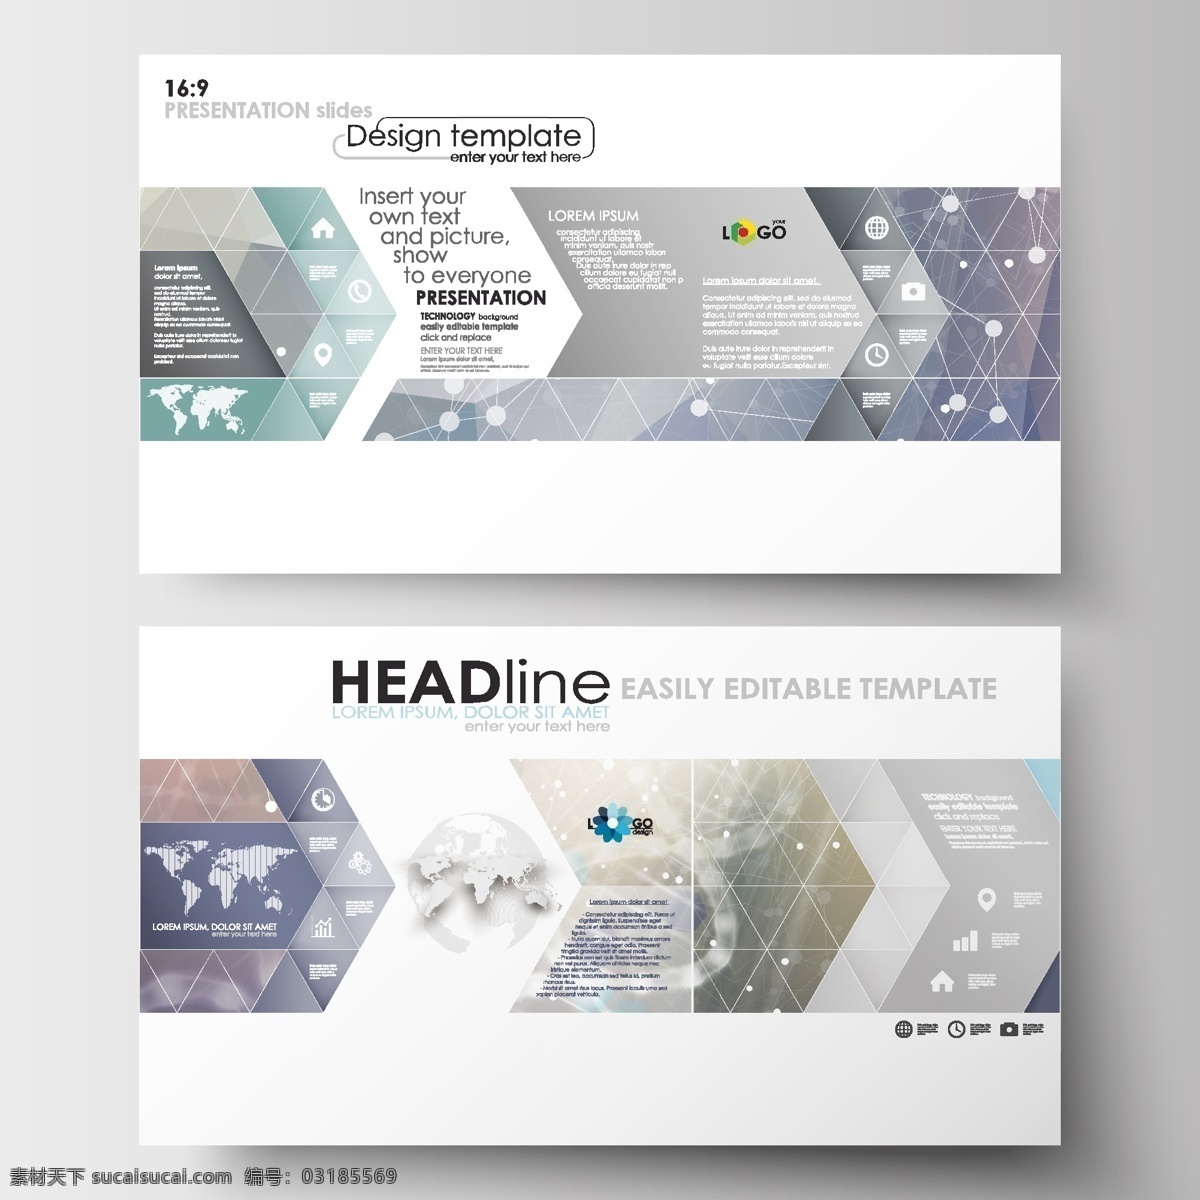 折页模板 dm 促销 版式设计 卡片设计 单张设计